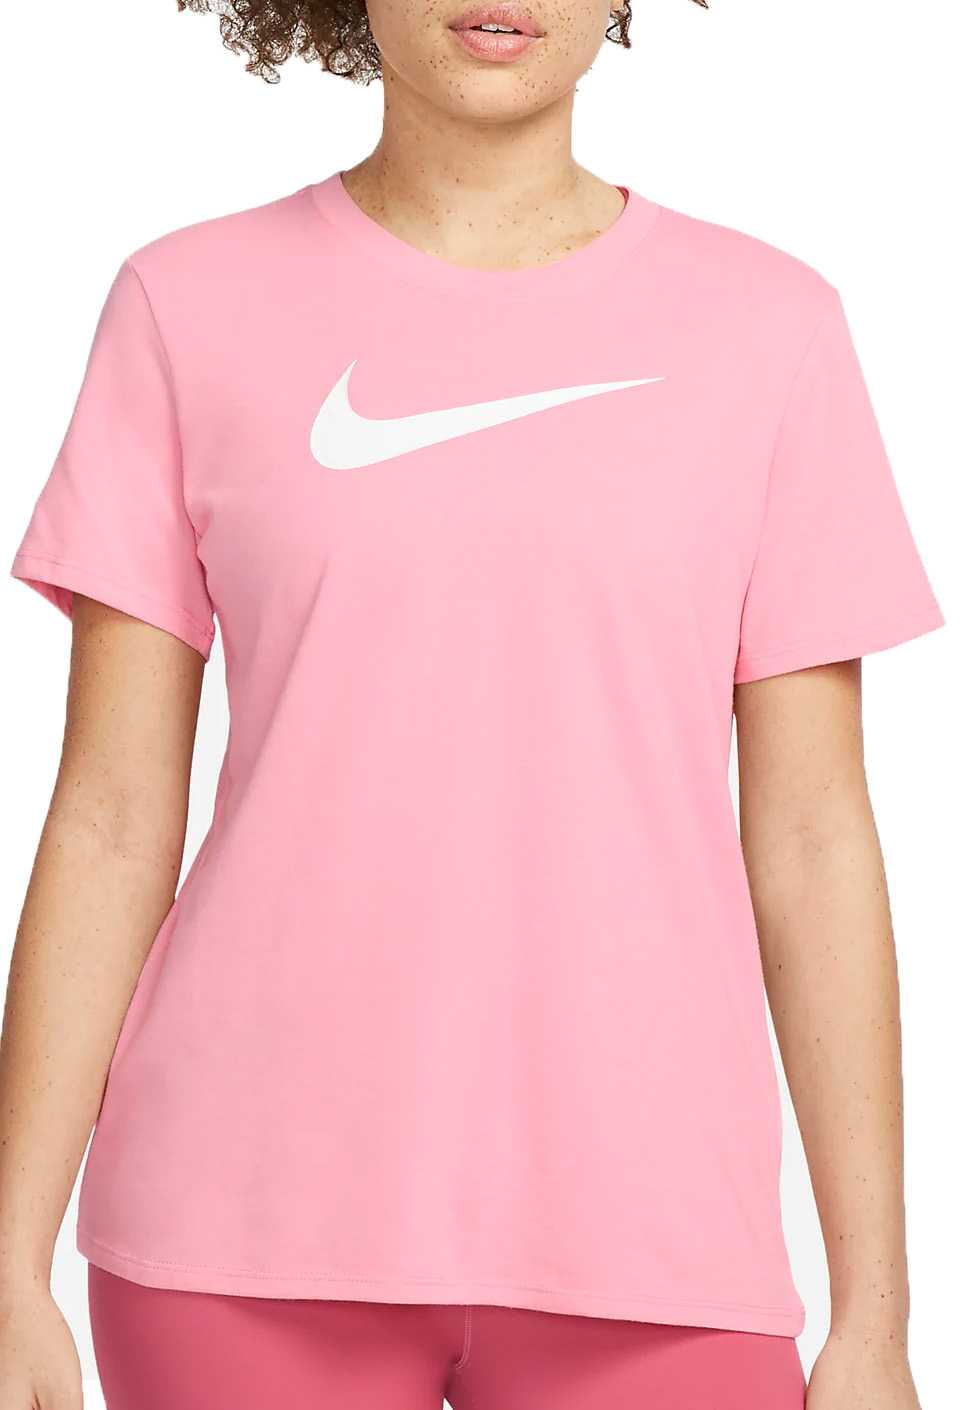 Dámské běžecké tričko s krátkým rukávem Nike Dri-FIT One